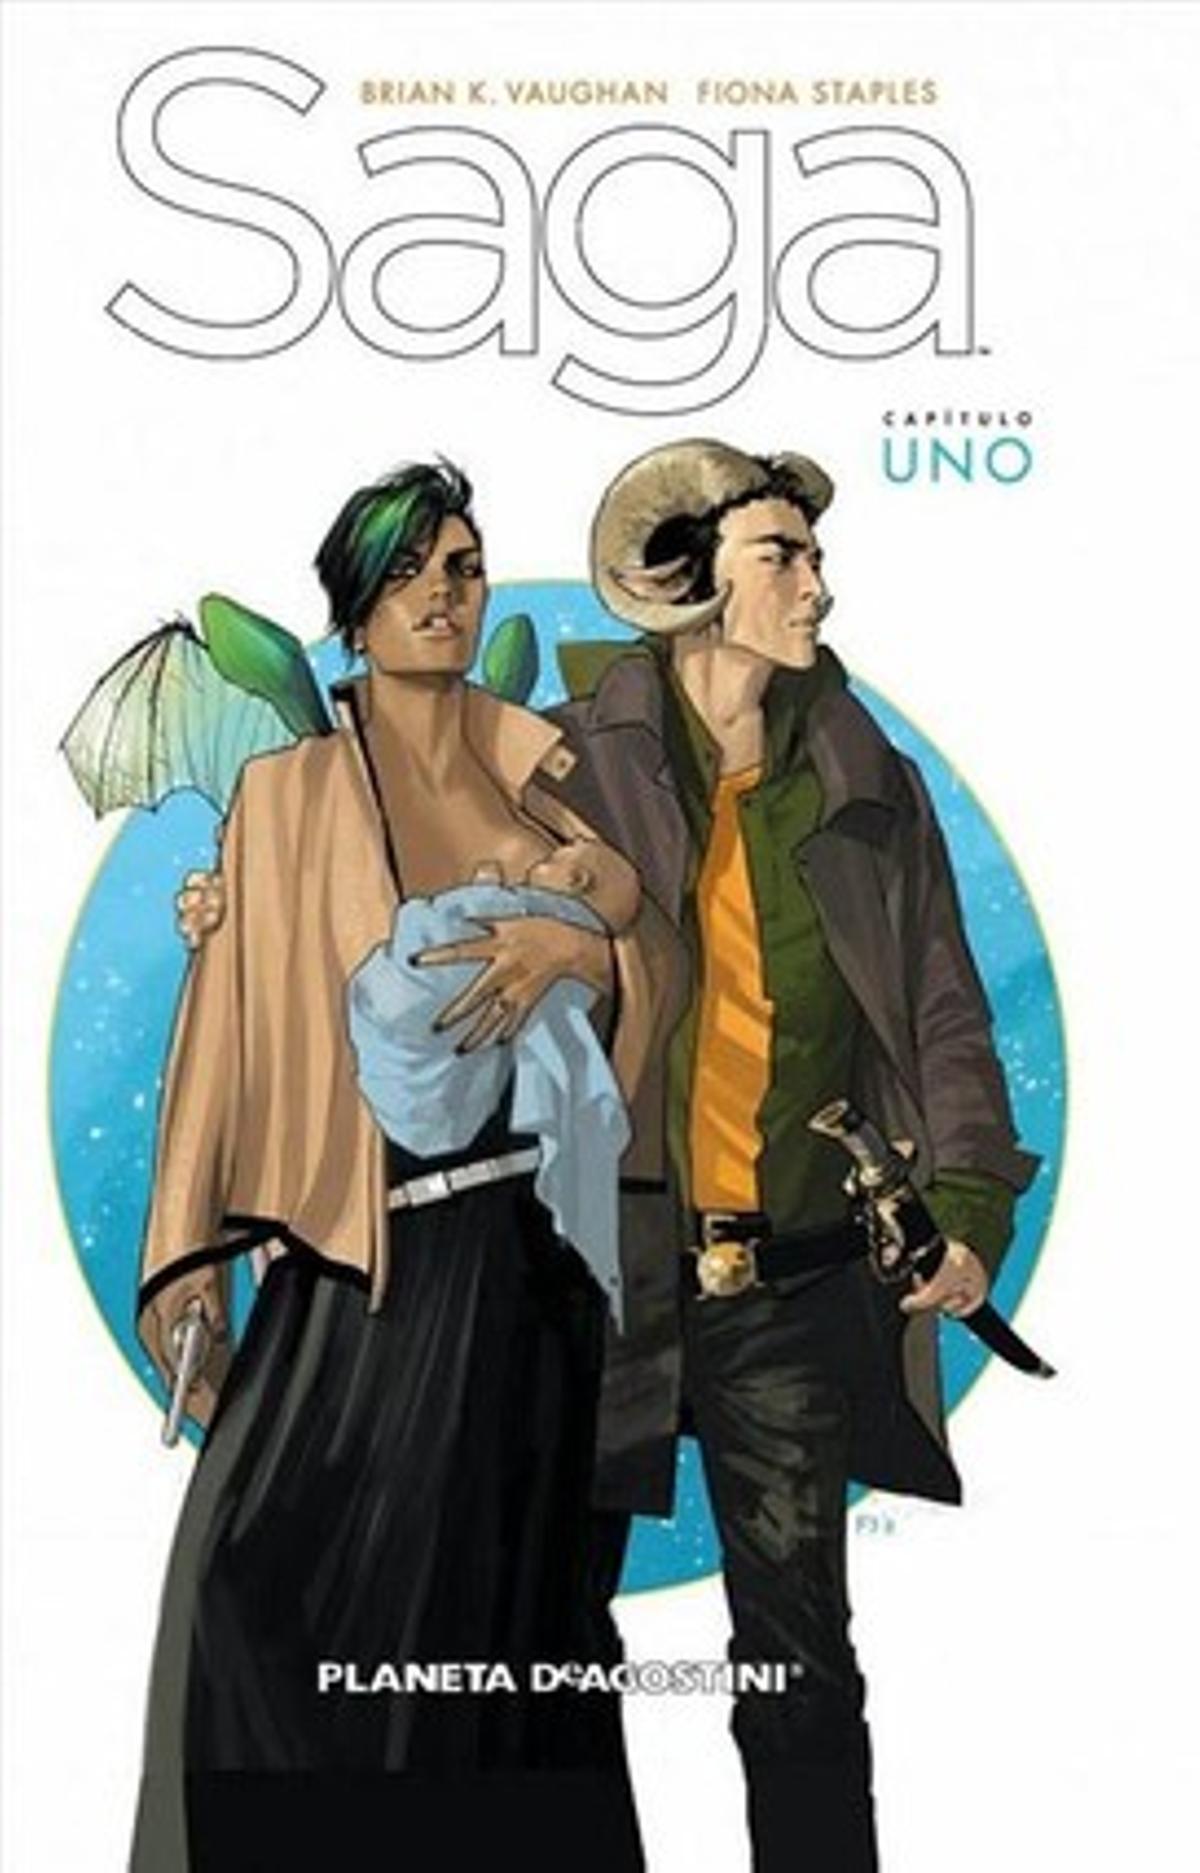 Portada de la primera de las cuatro entregas publicadas en España de la serie de ciencia ficción ’Saga’, premiada como Mejor obra extranjera.